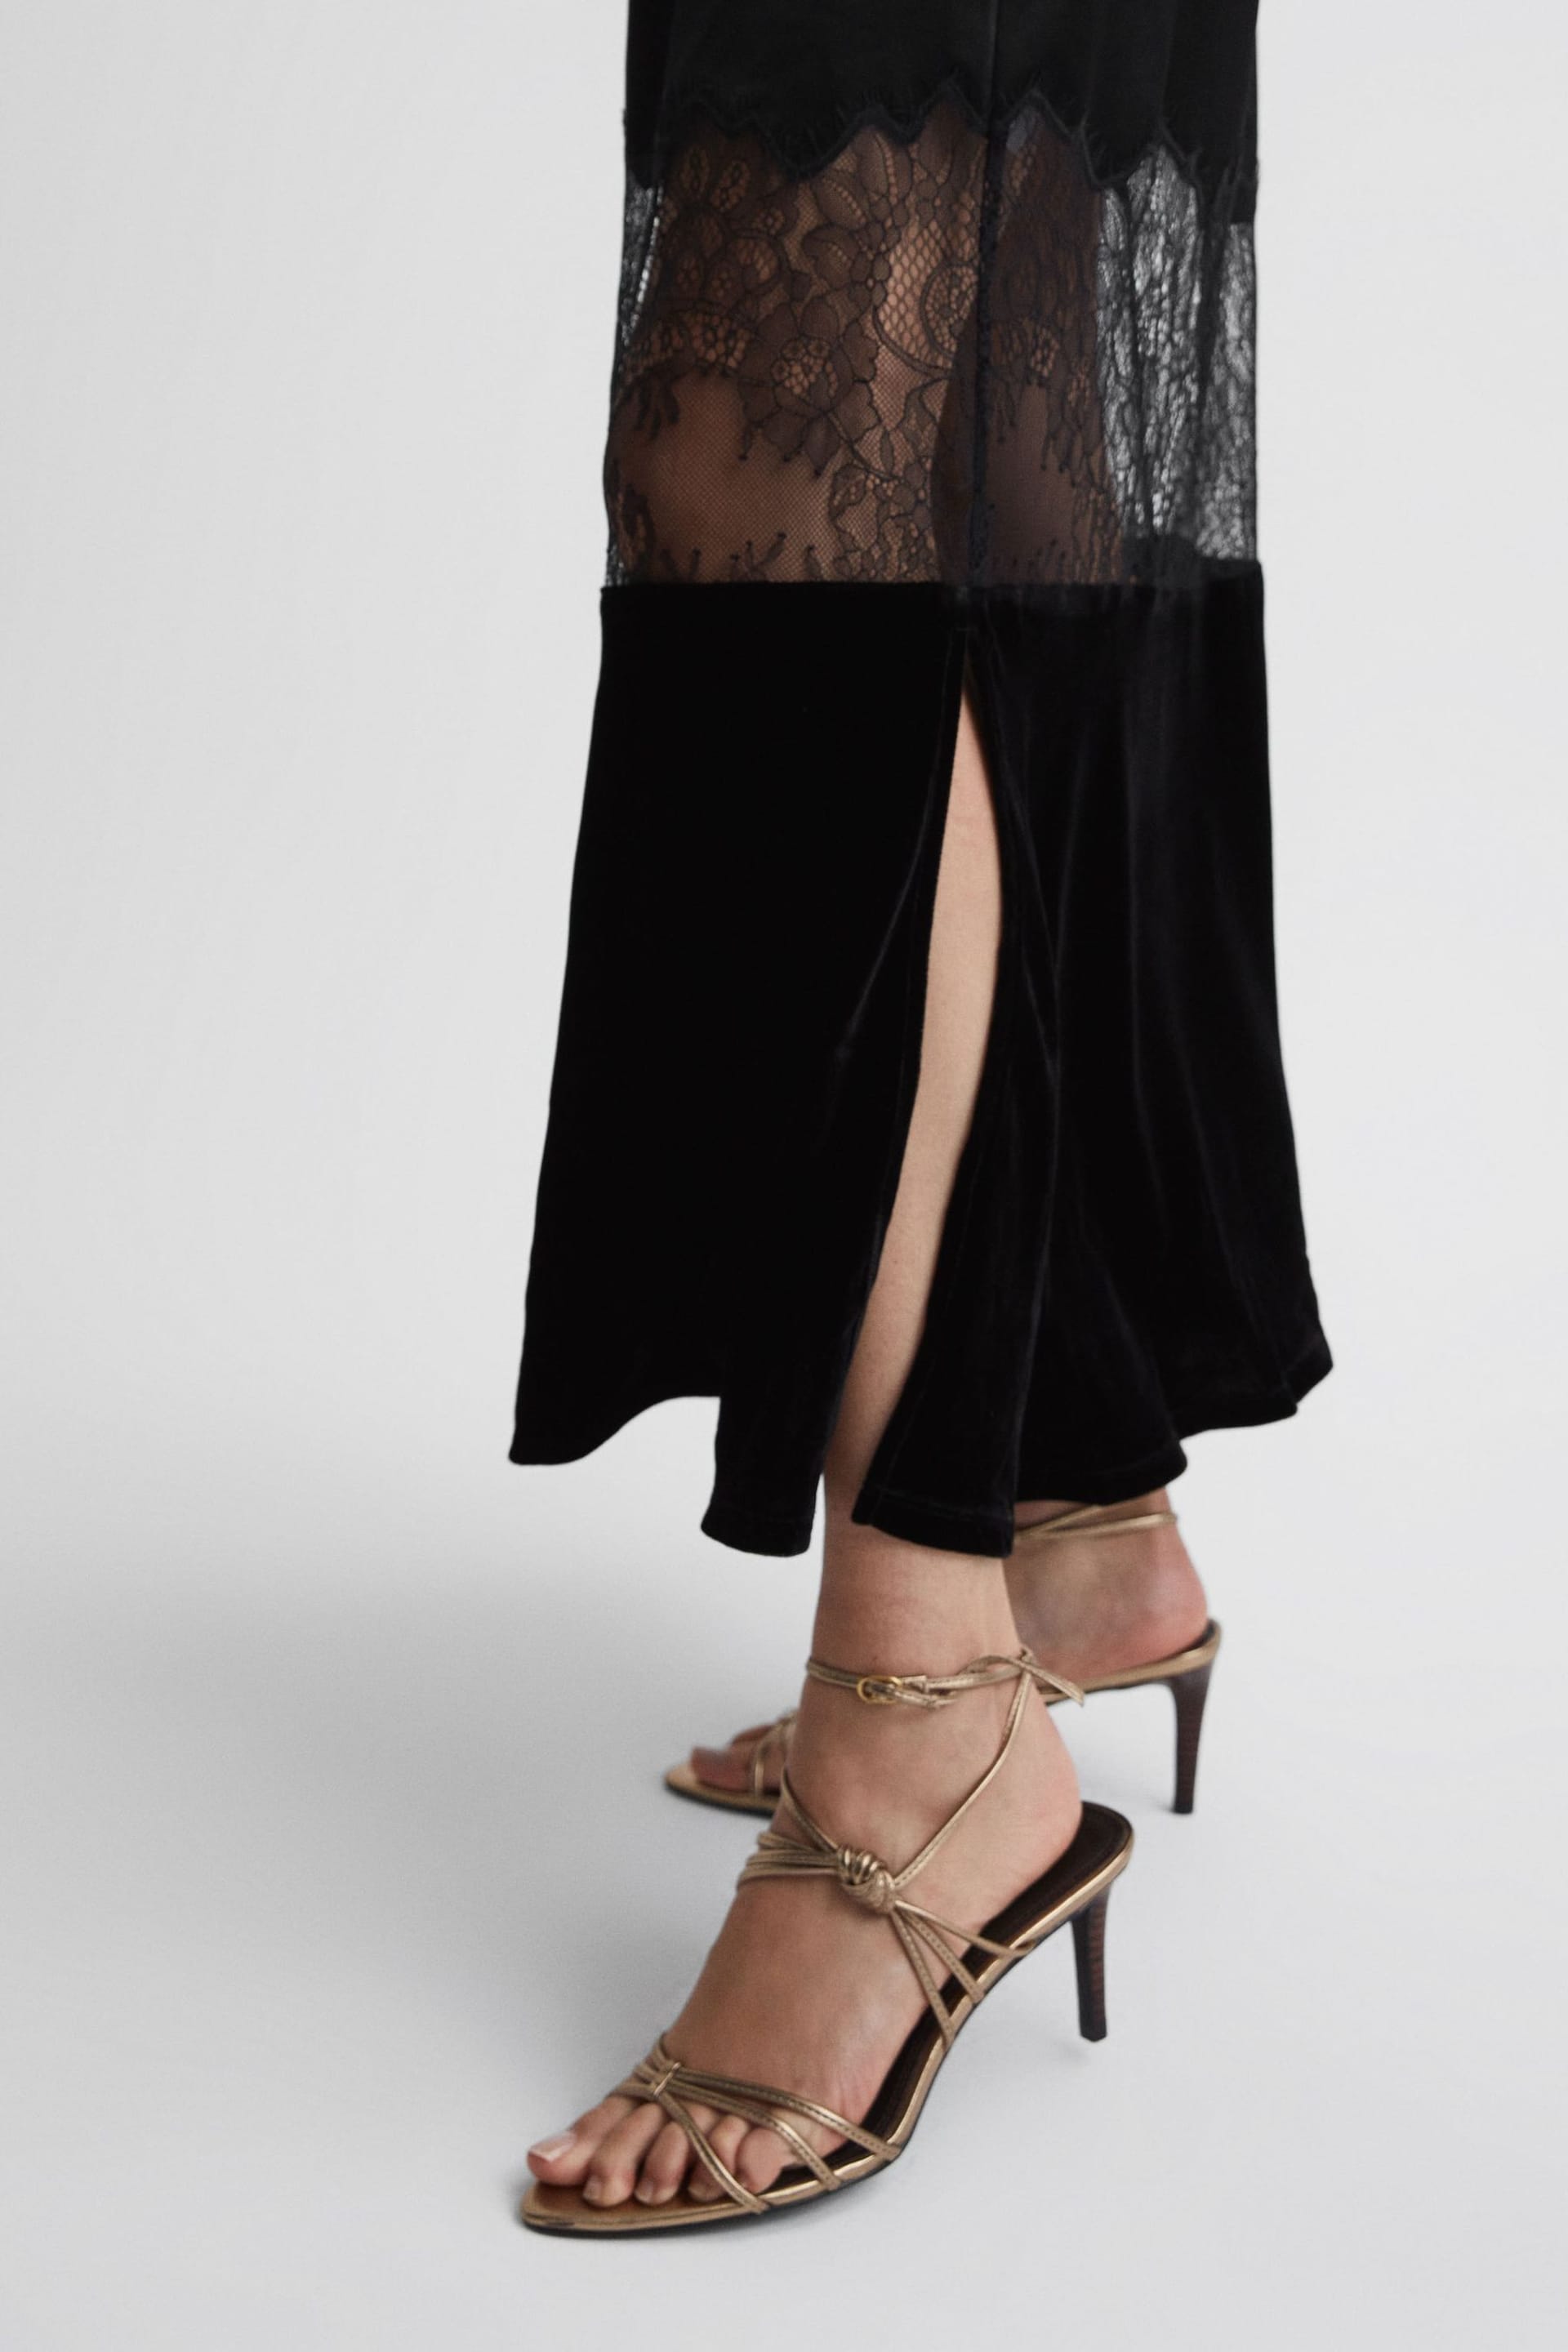 Reiss Black Janelle Fitted Satin-Velvet Midi Dress - Image 3 of 4